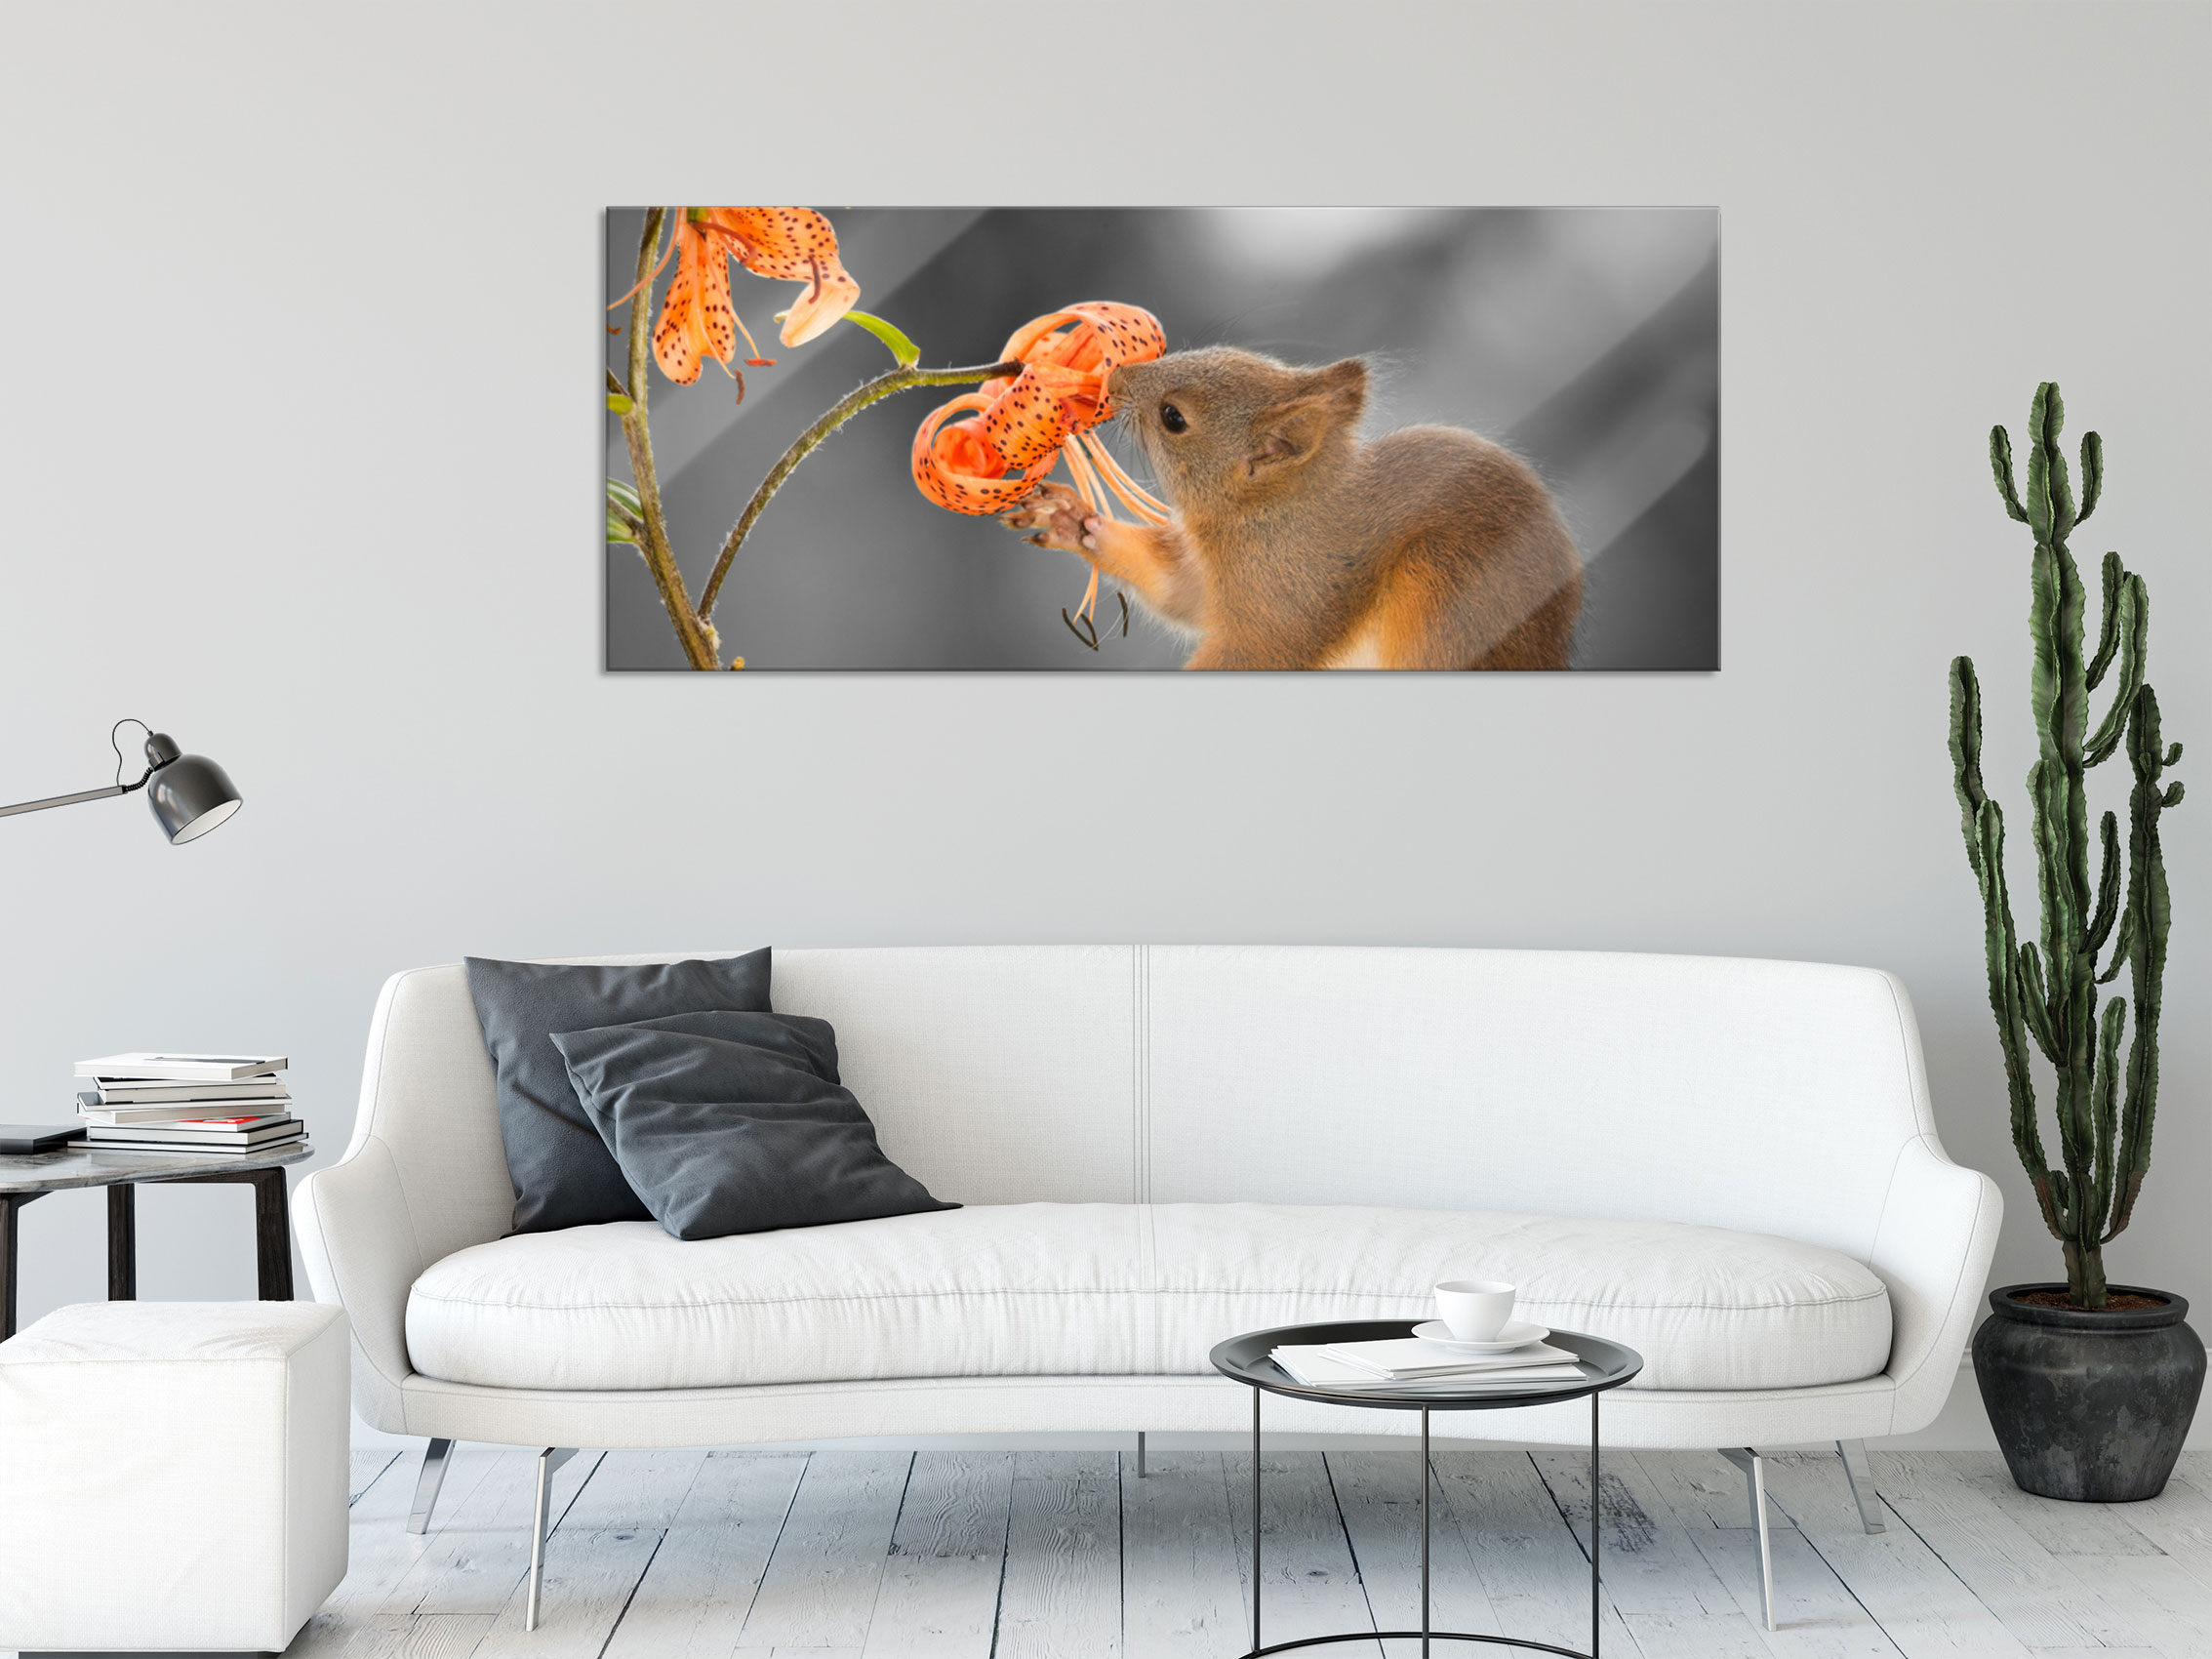 Eichhörnchen riecht an | Panorama einer Wandhalterung Blume Glasbild, eBay inkl